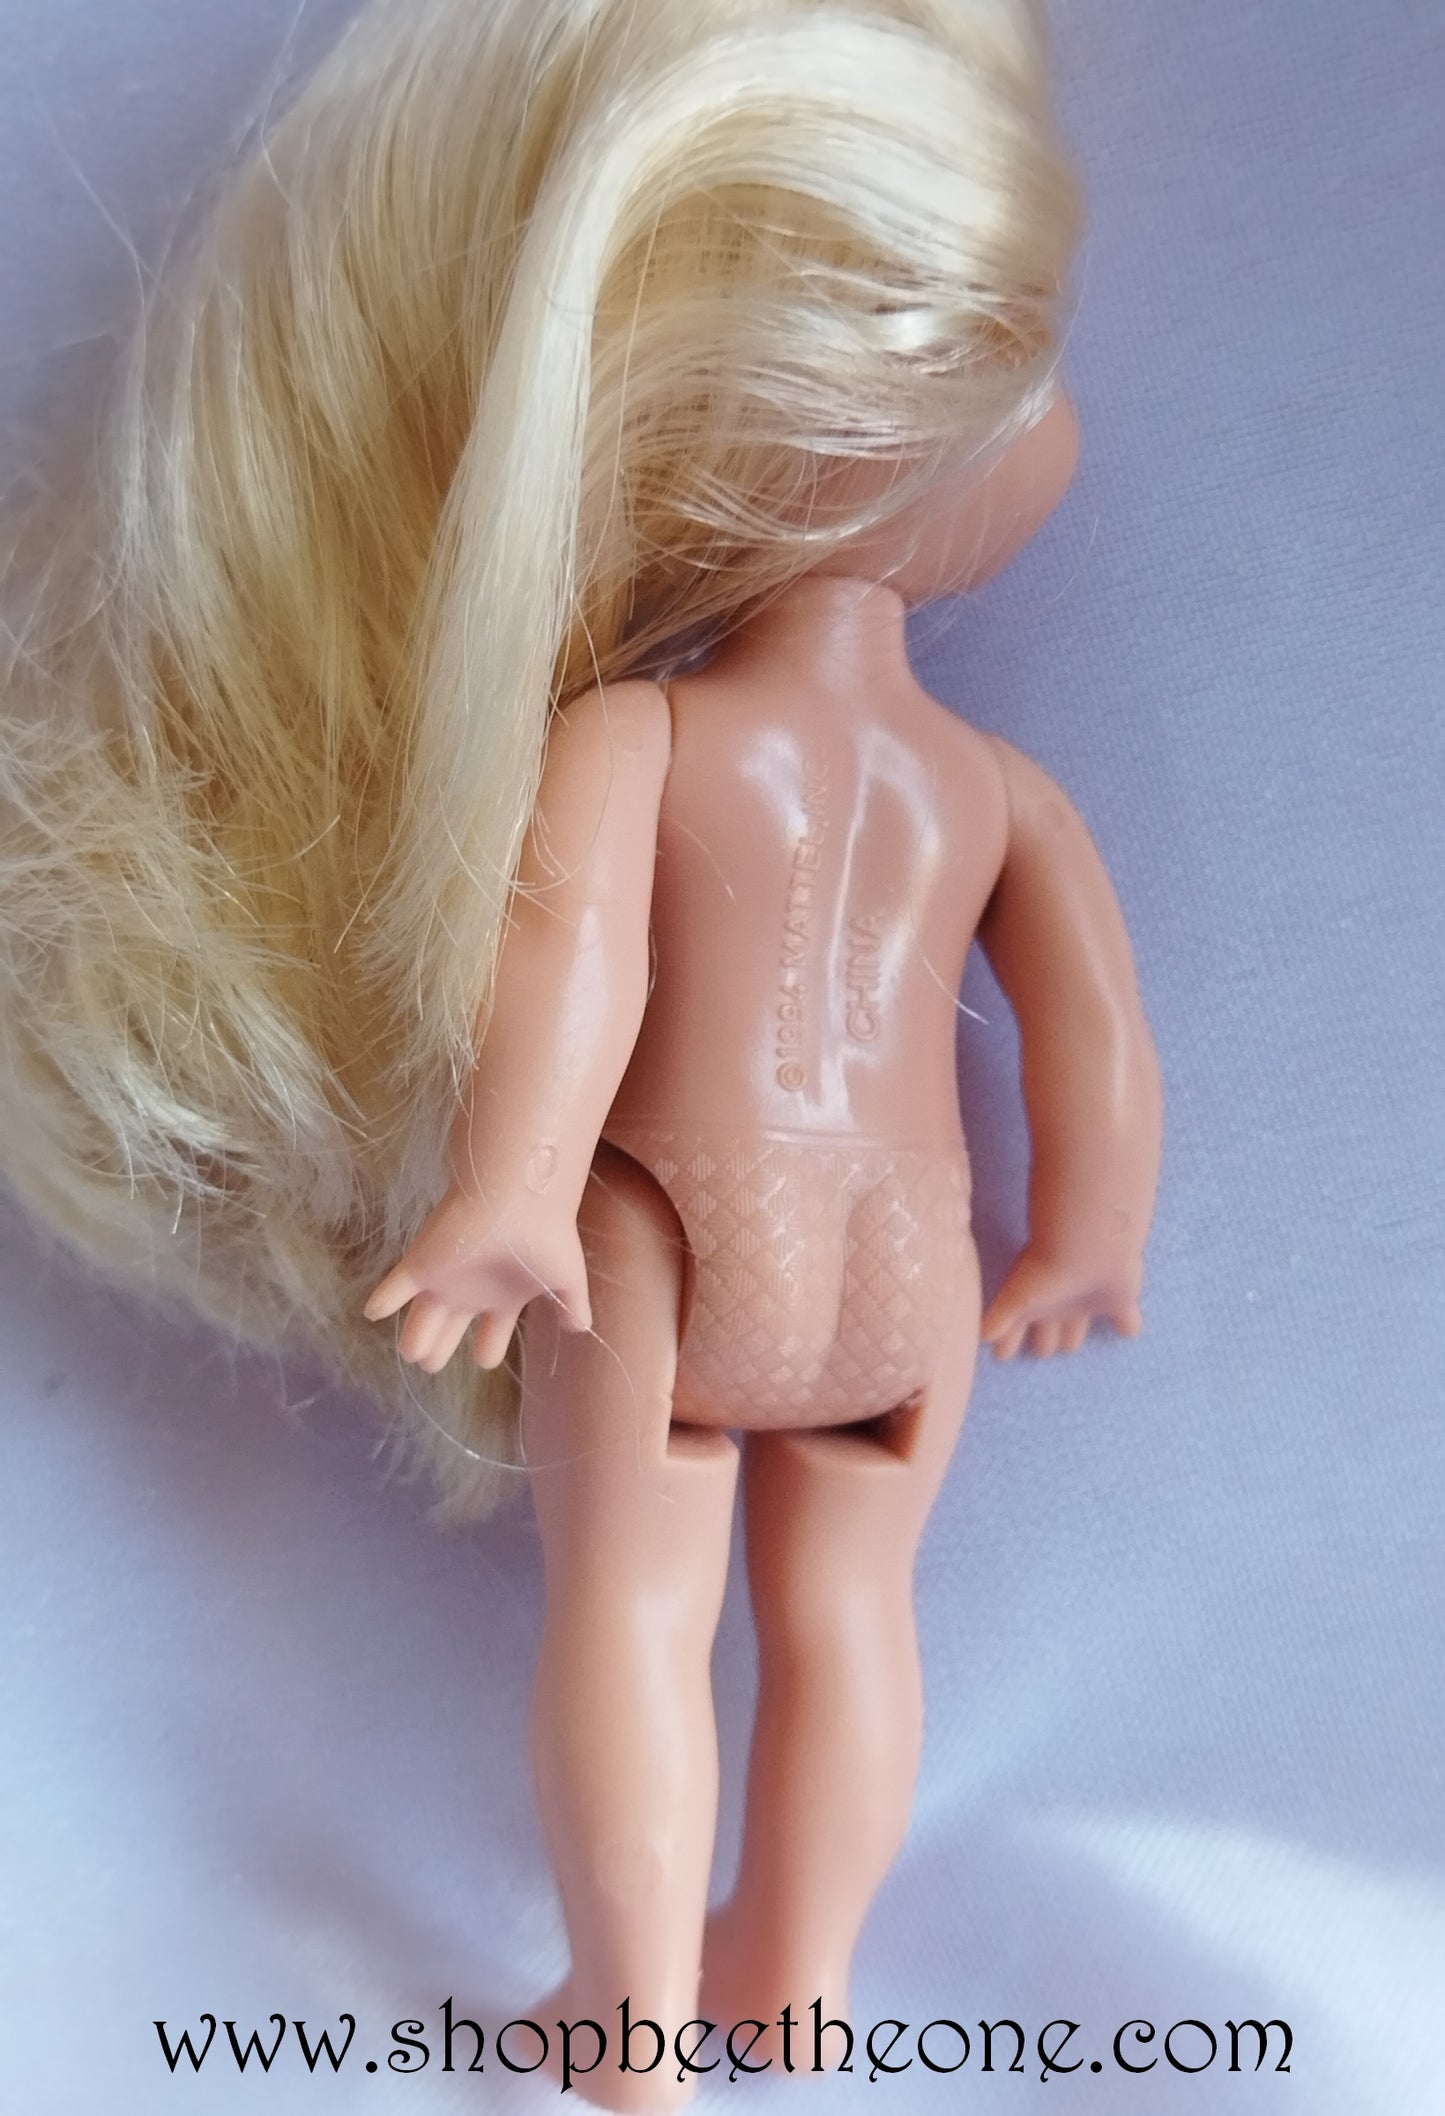 Barbie: Princesse Raiponce (as Rapunzel) - Kelly as Petal Princess - Mattel 2002 - Poupée nue